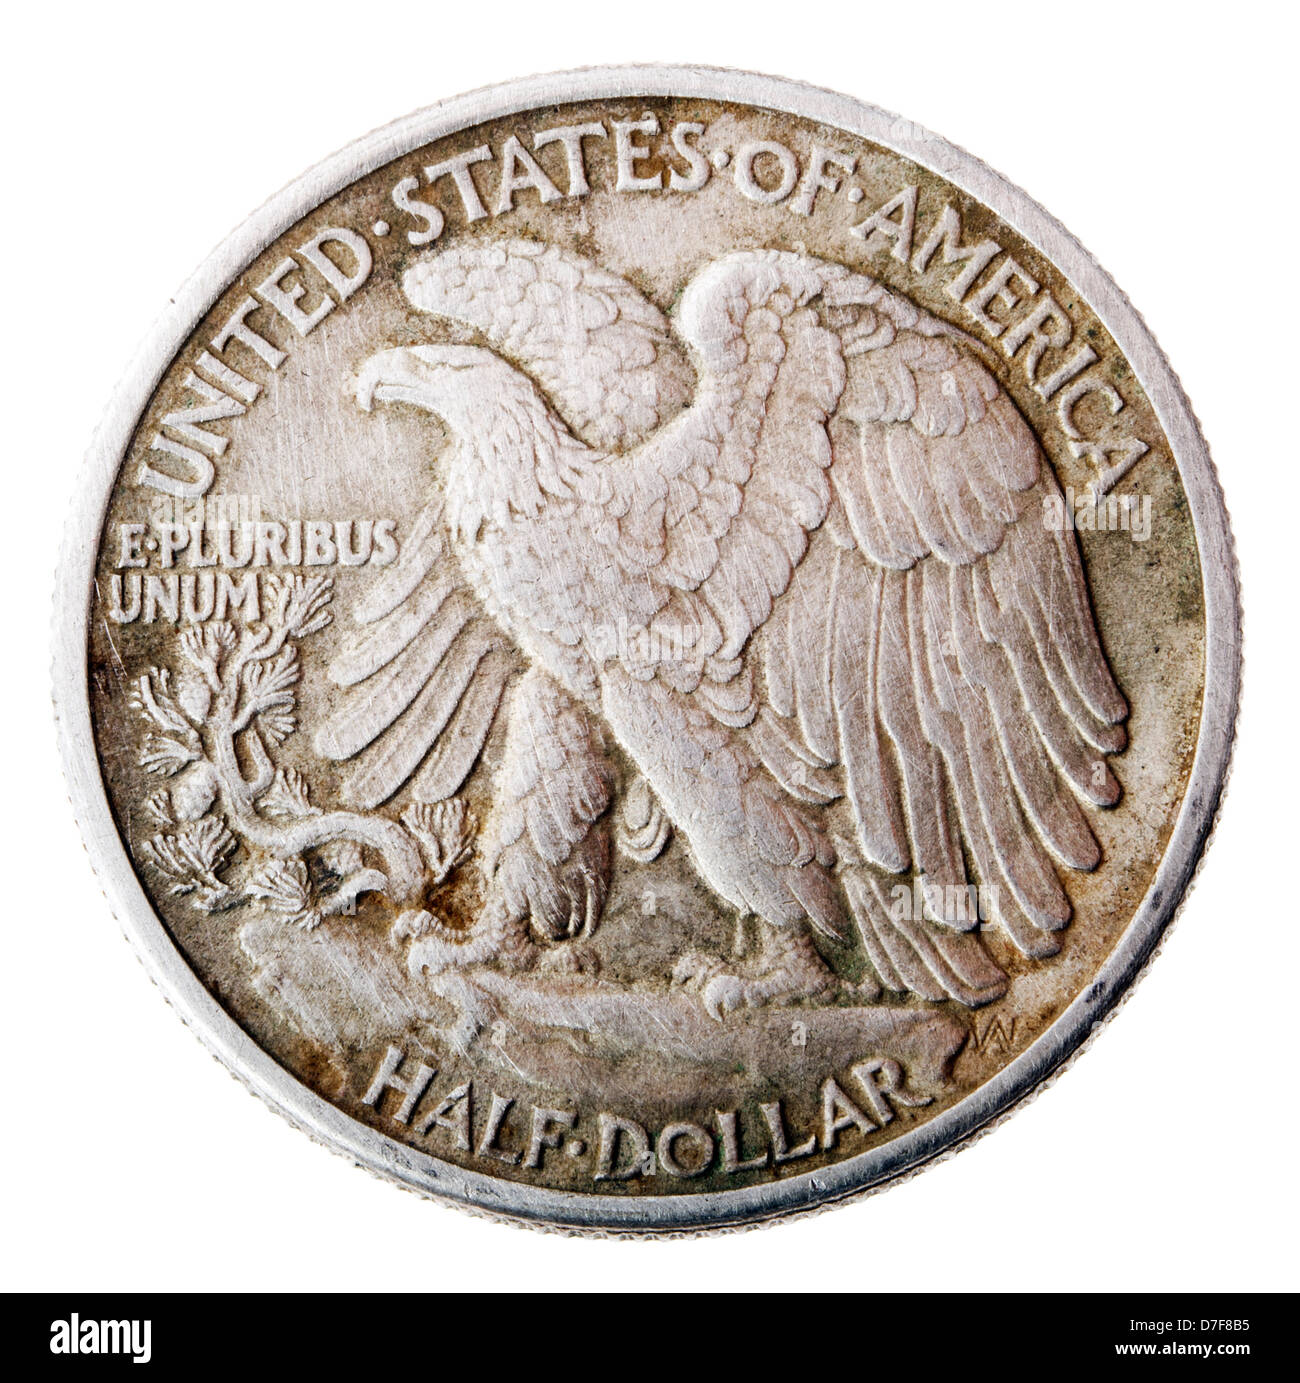 Vue frontale arrière (côté queue) demi-dollar d'argent frappées en 1942. Pygargue à tête blanche est représenté au sommet de la perche. Banque D'Images